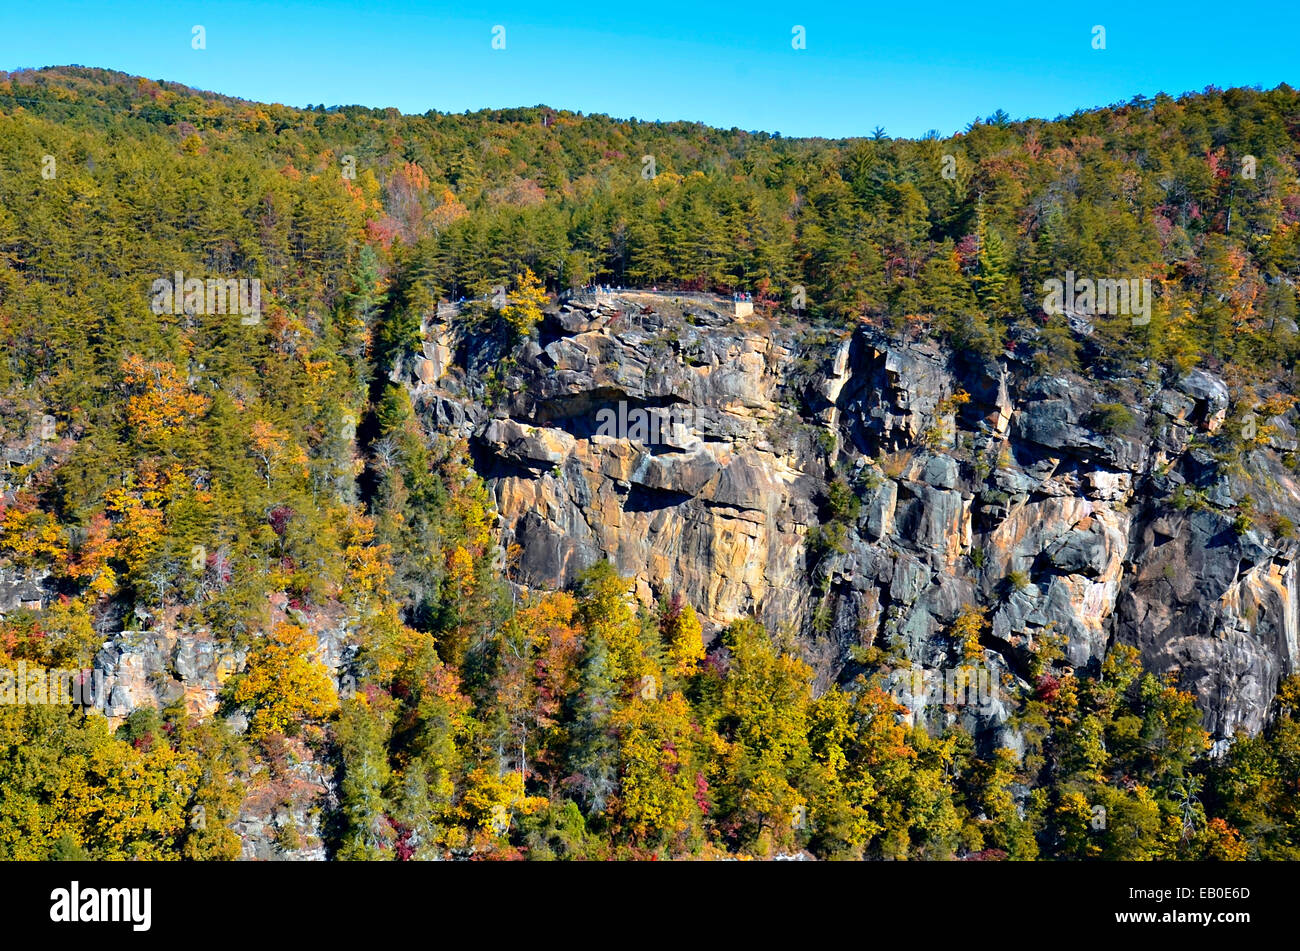 Un rocher à l'oublier en Géorgie des Gorges de Tallulah, une attraction touristique populaire. Banque D'Images